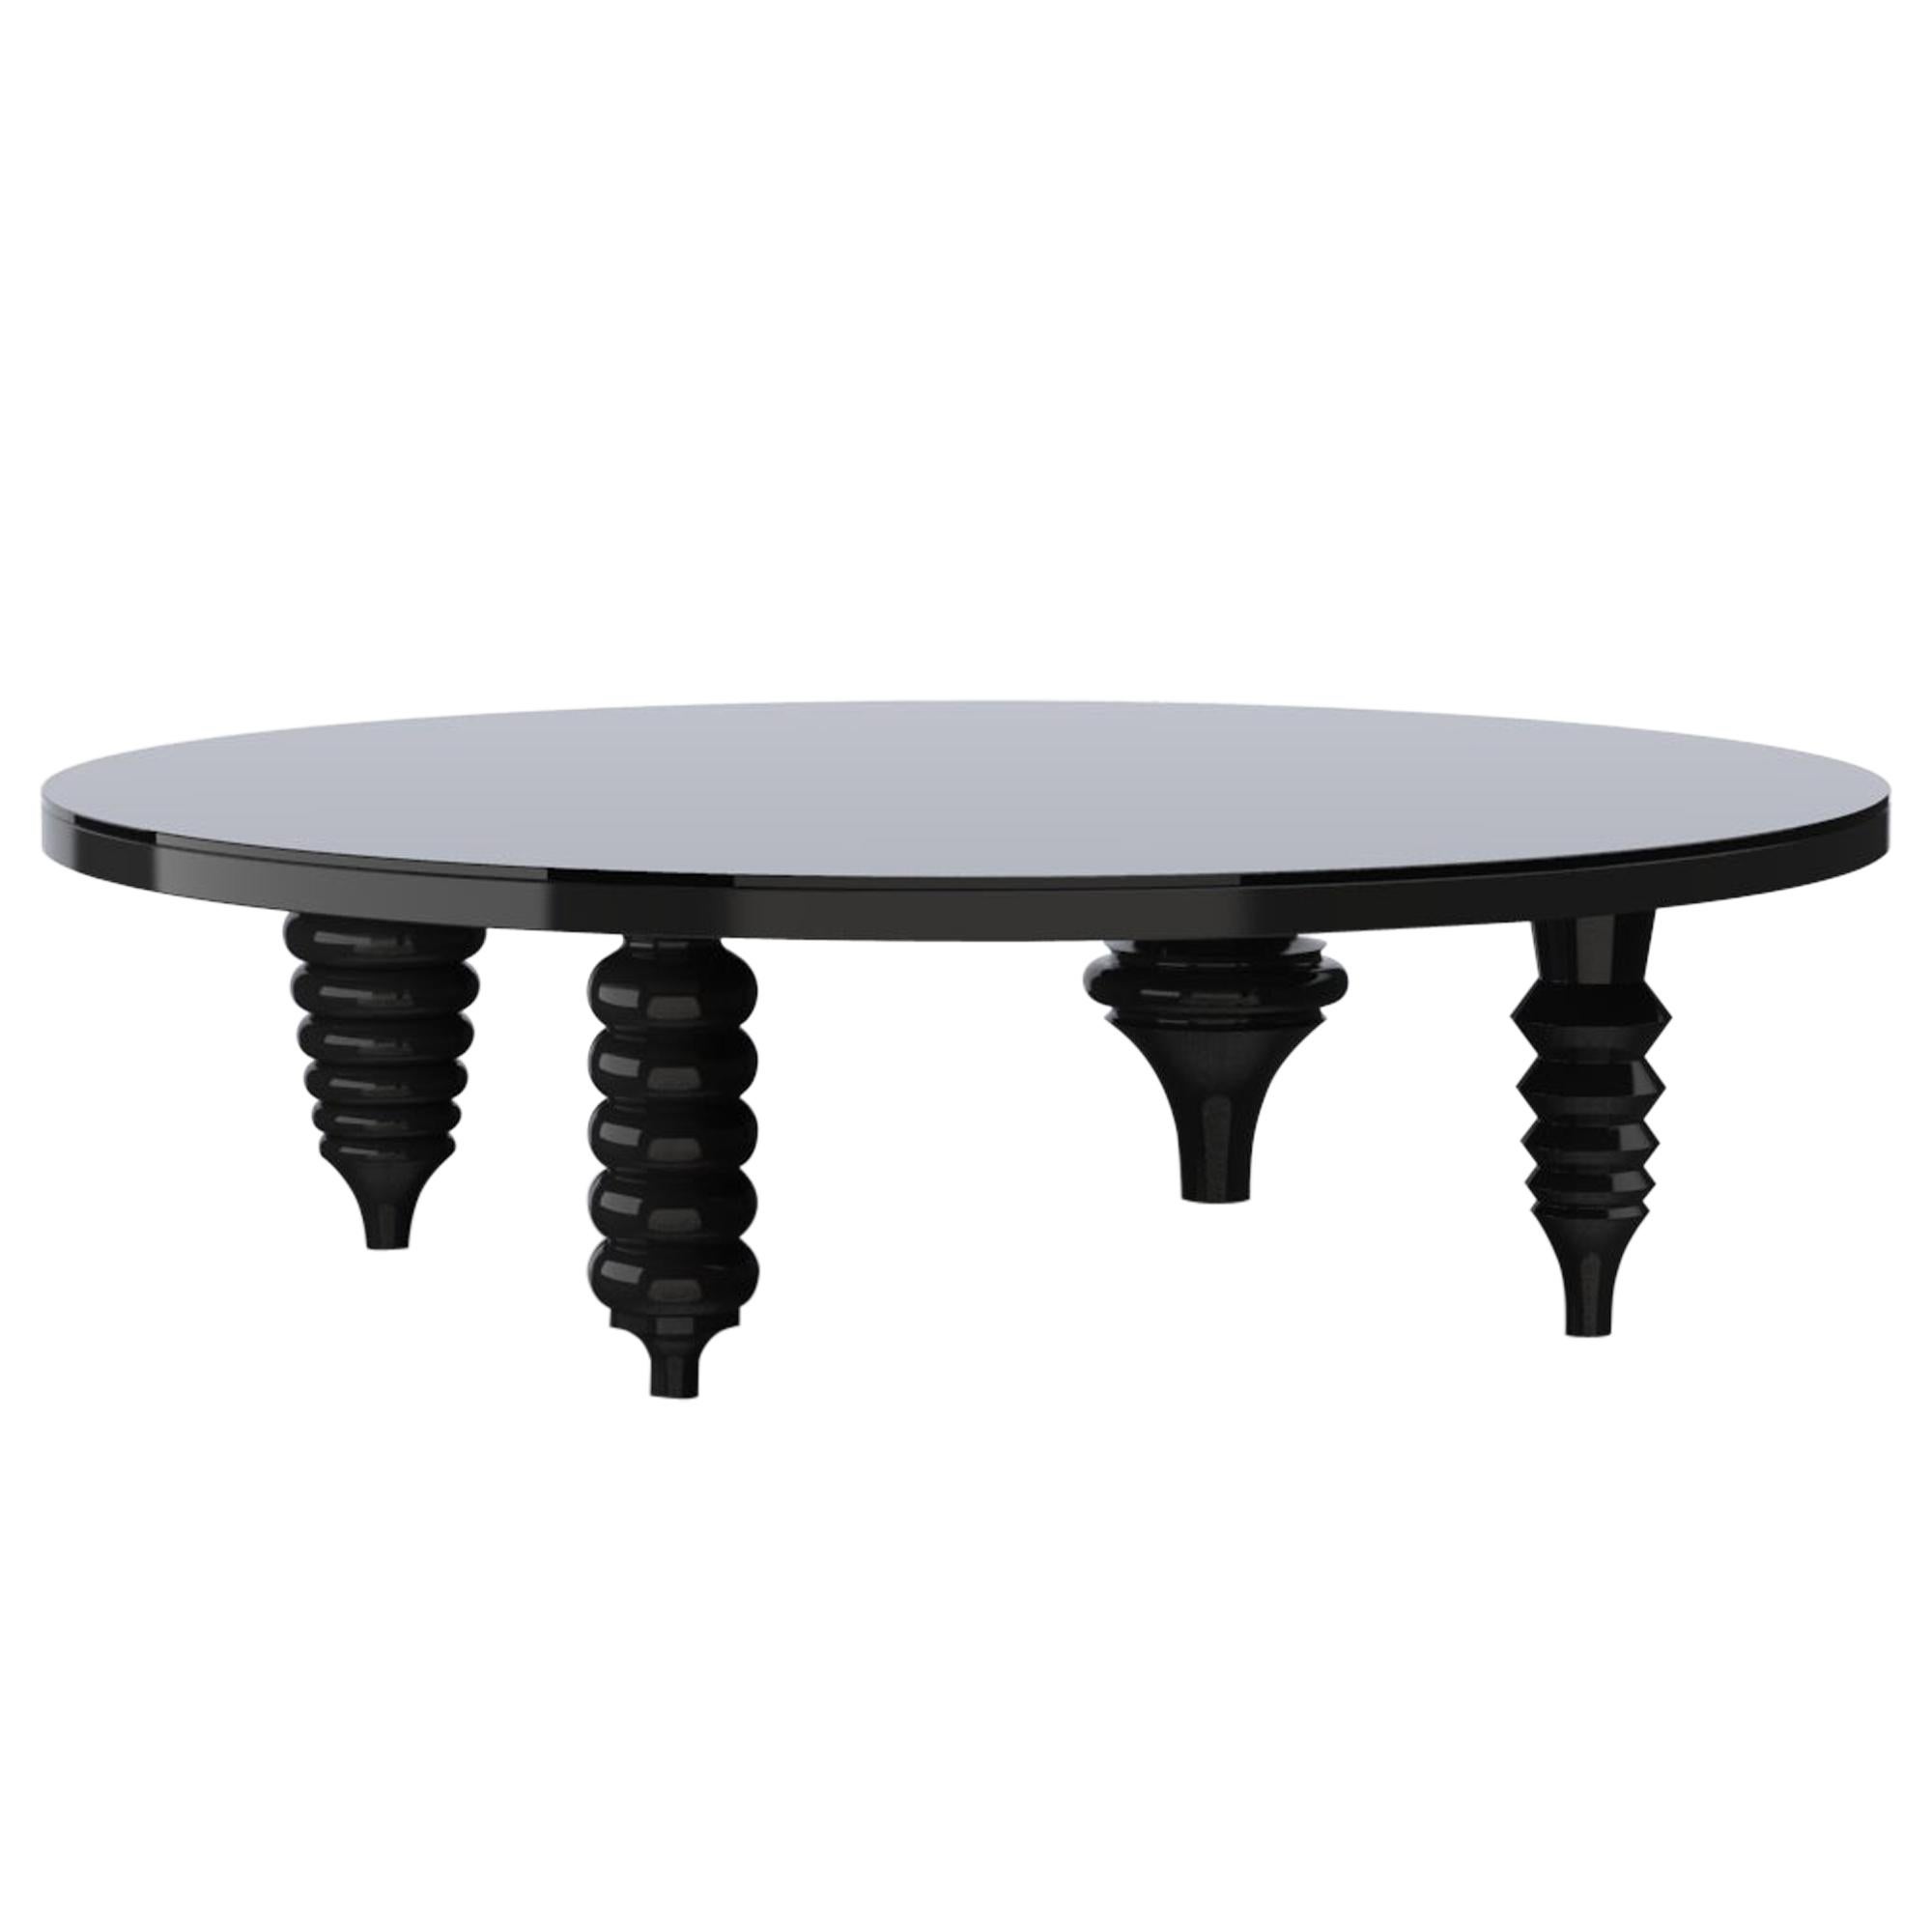 Table basse contemporaine multi-pieds finition laquée noire brillante, plateau en verre